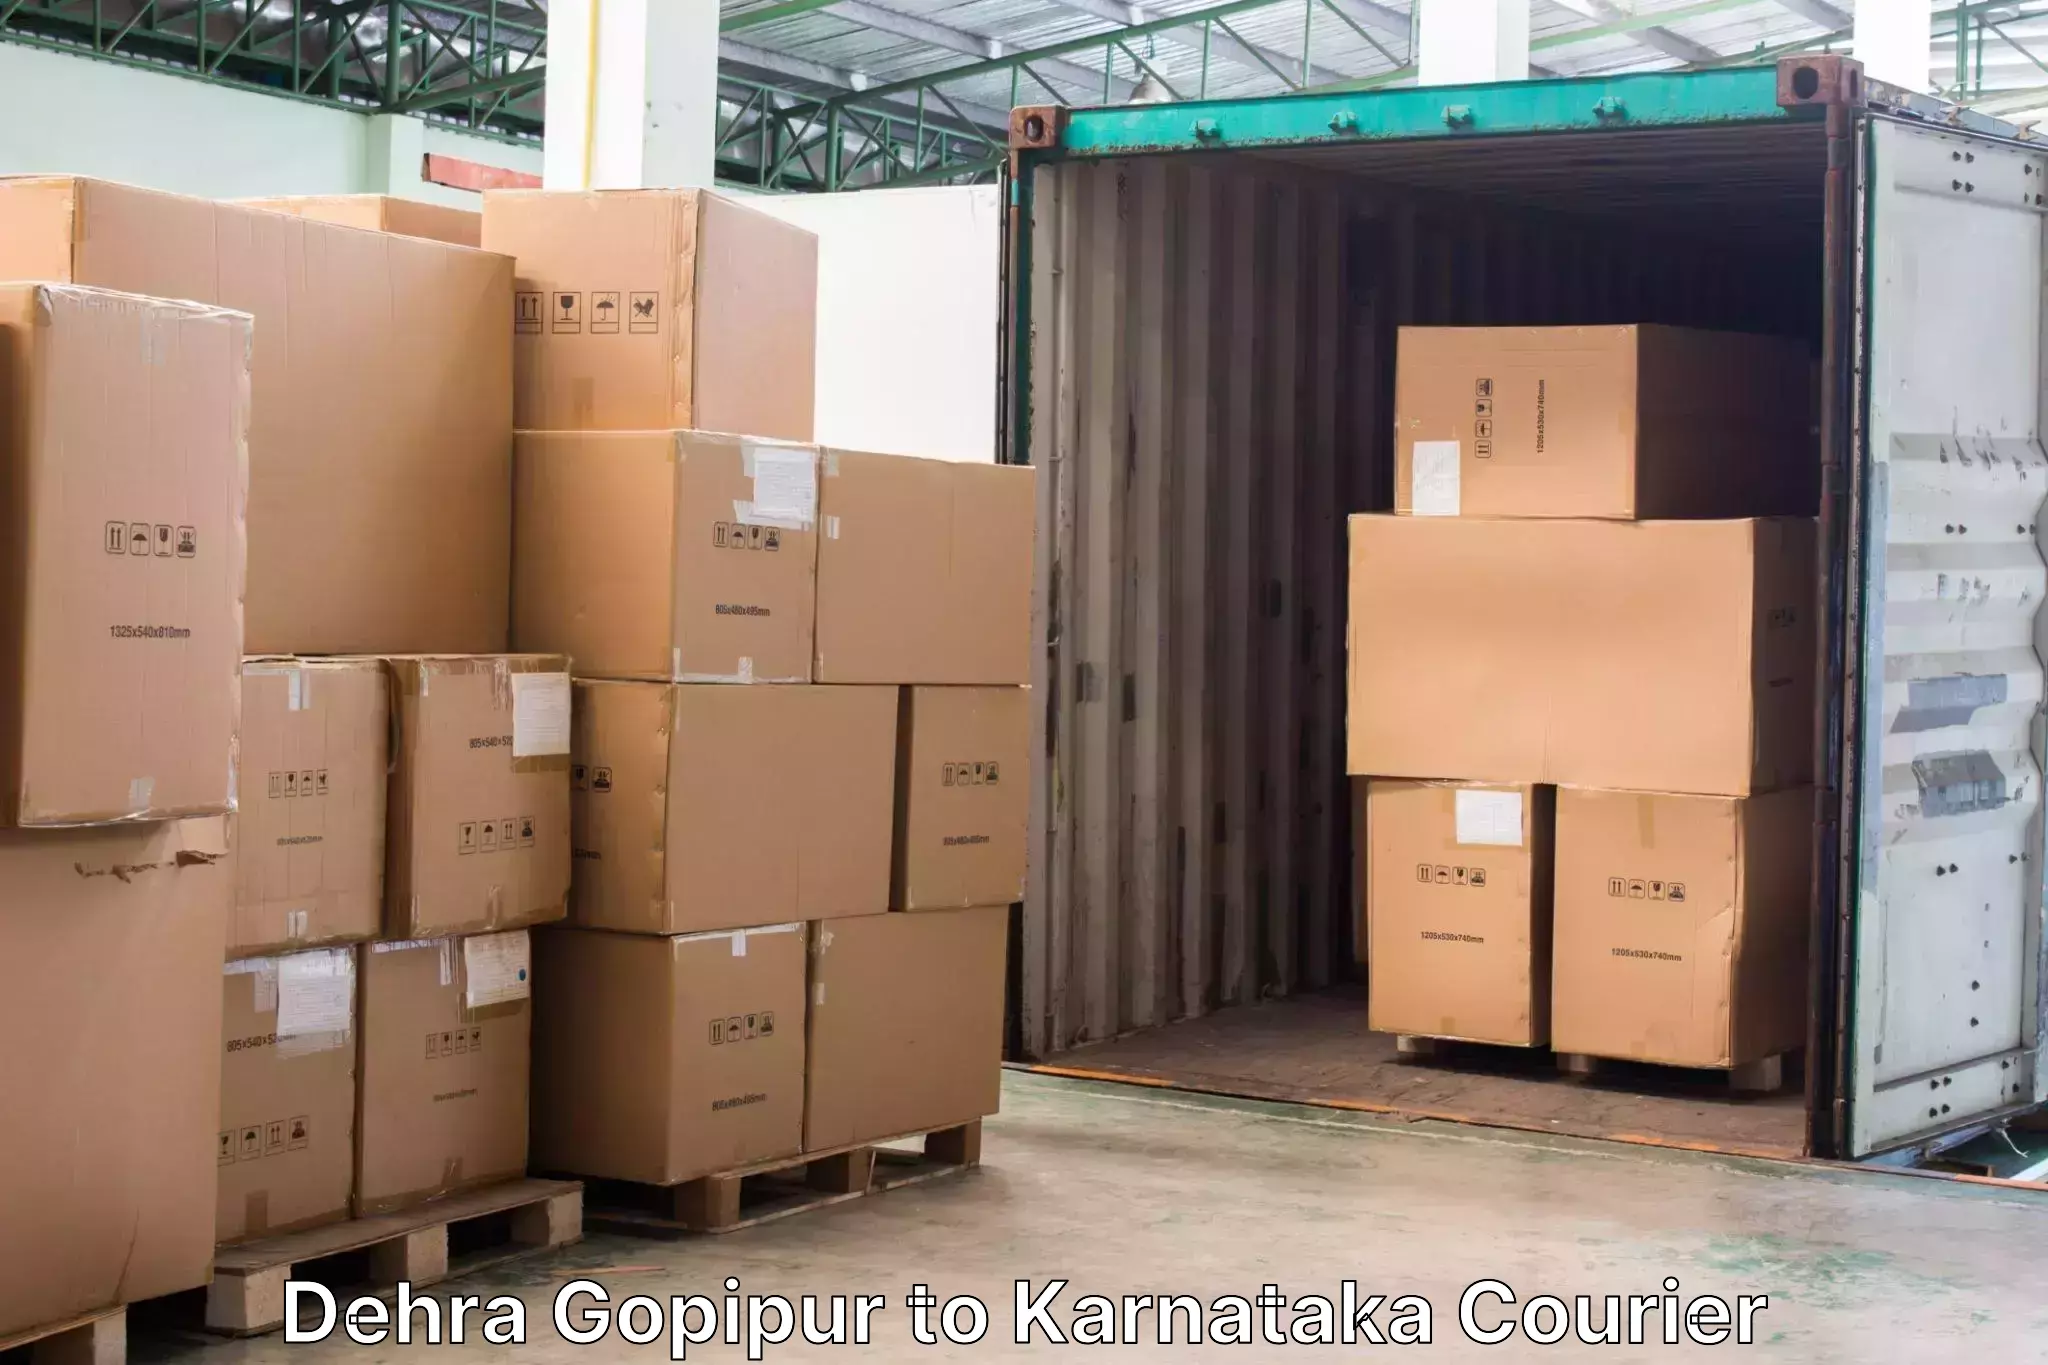 Baggage transport network Dehra Gopipur to Gulbarga